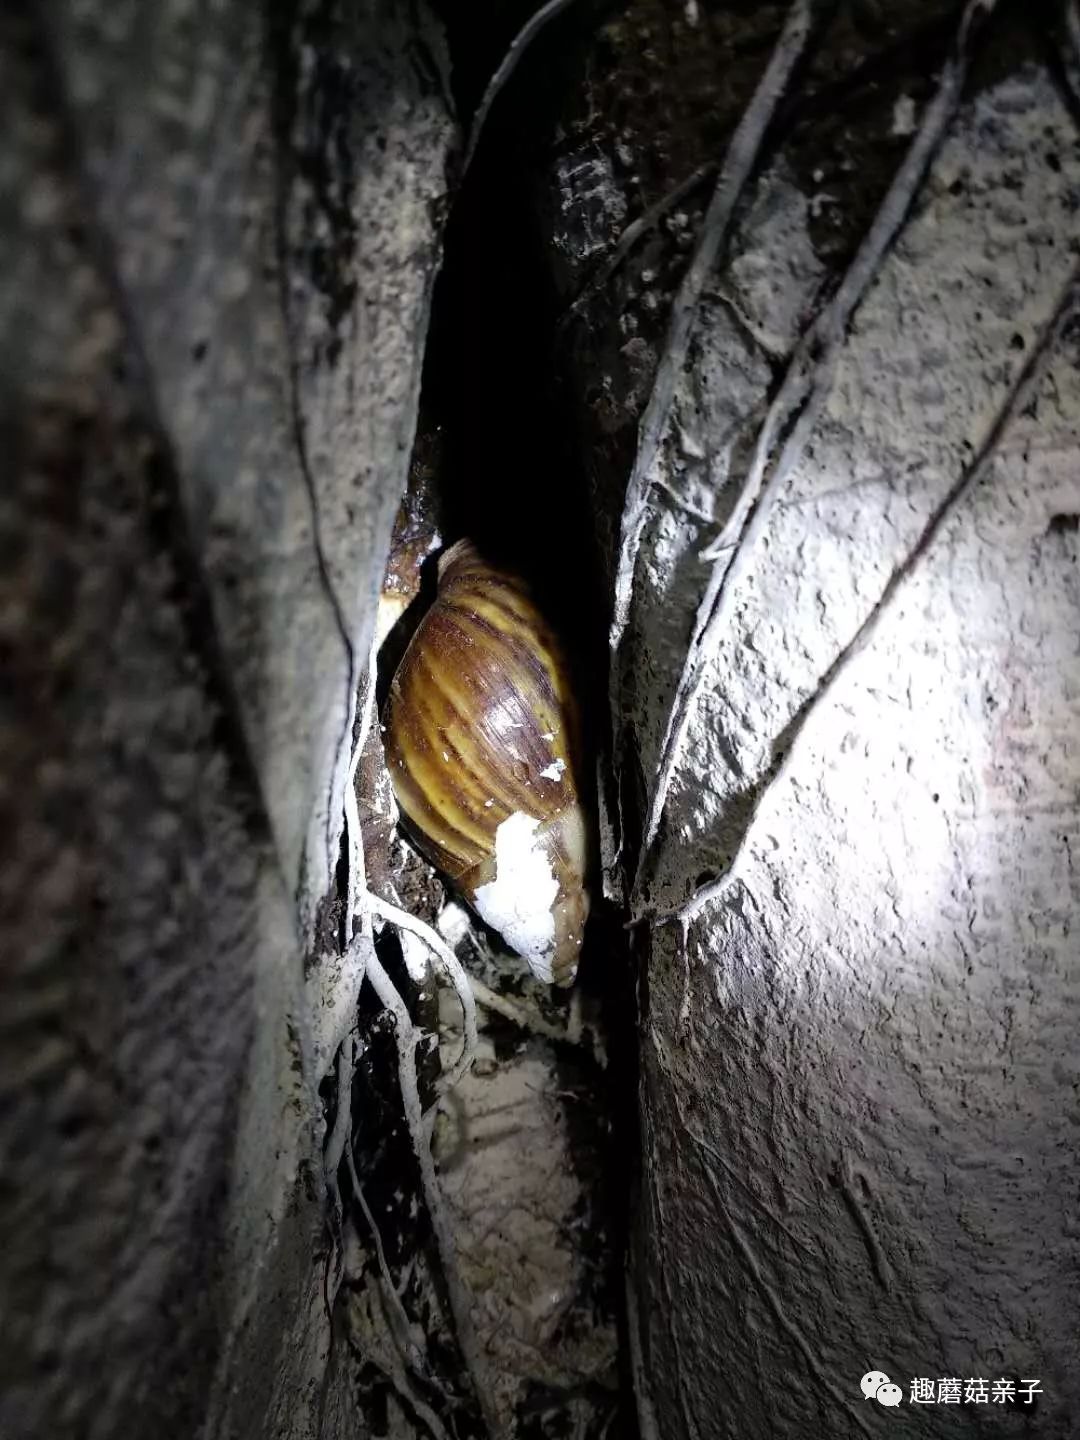 藏在树洞中的非洲大蜗牛